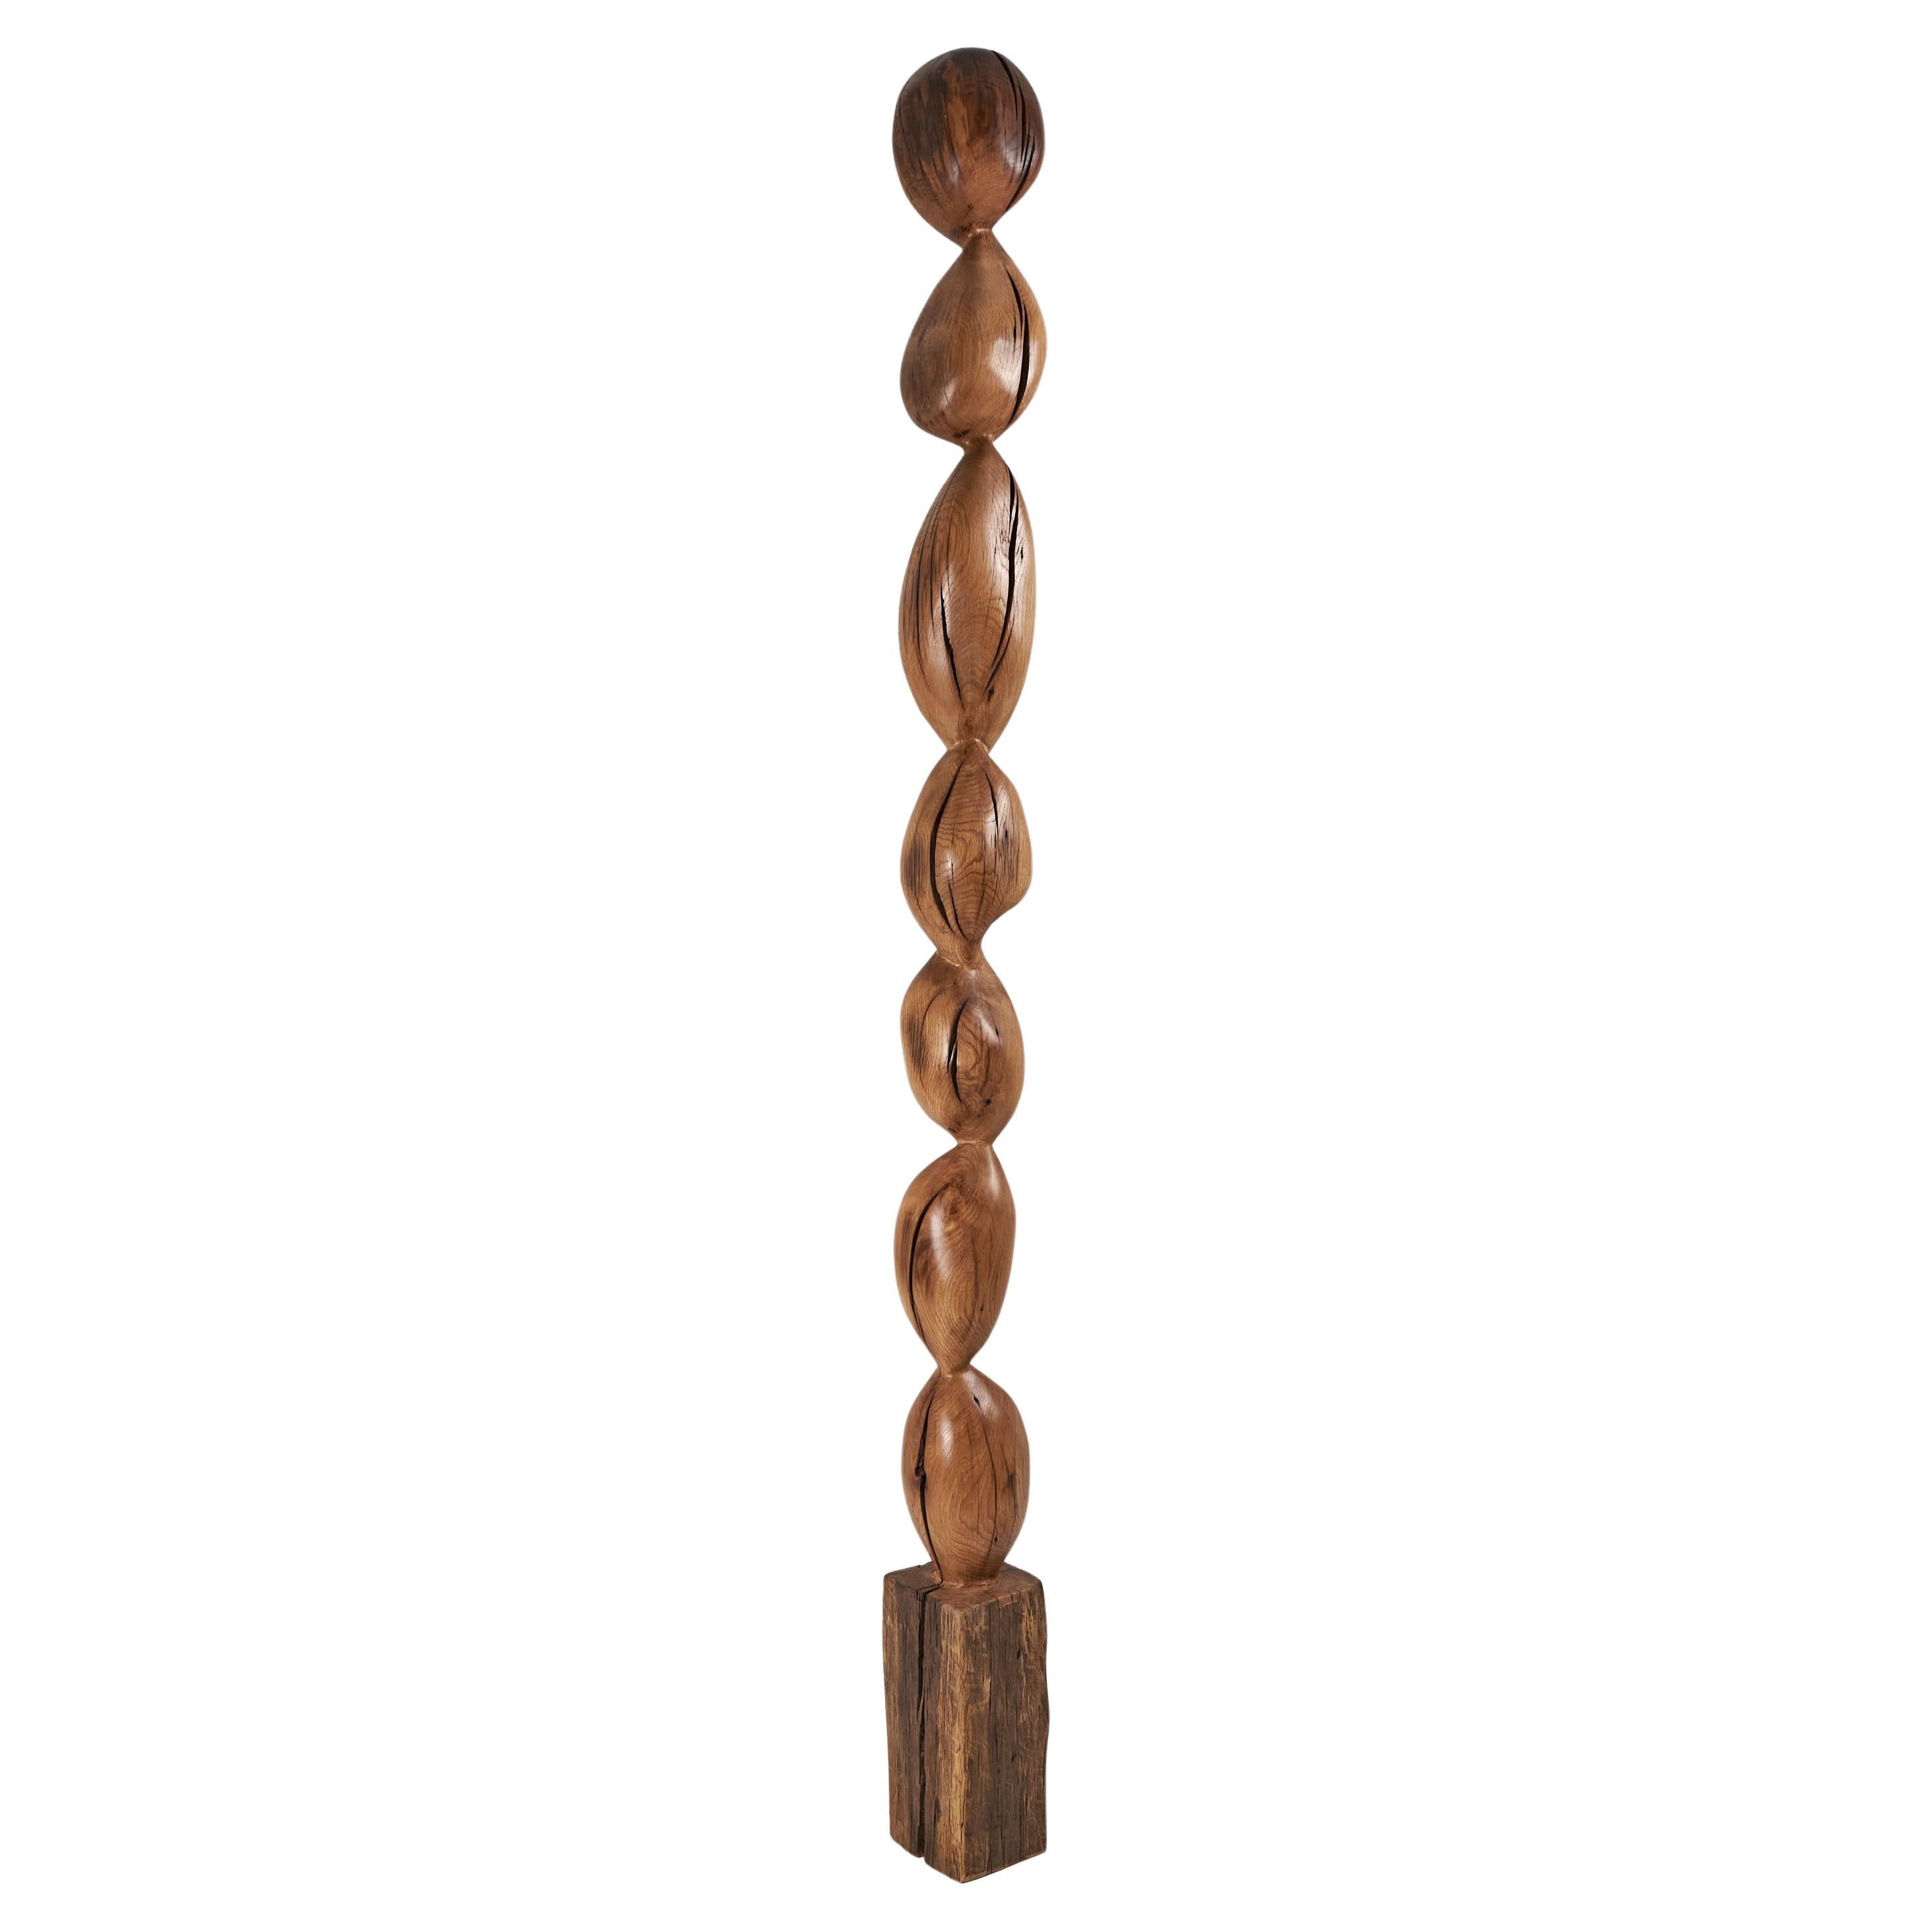 Still Stand Sculpture abstraite biomorphique en bois, sculptée à la tronçonneuse, XL